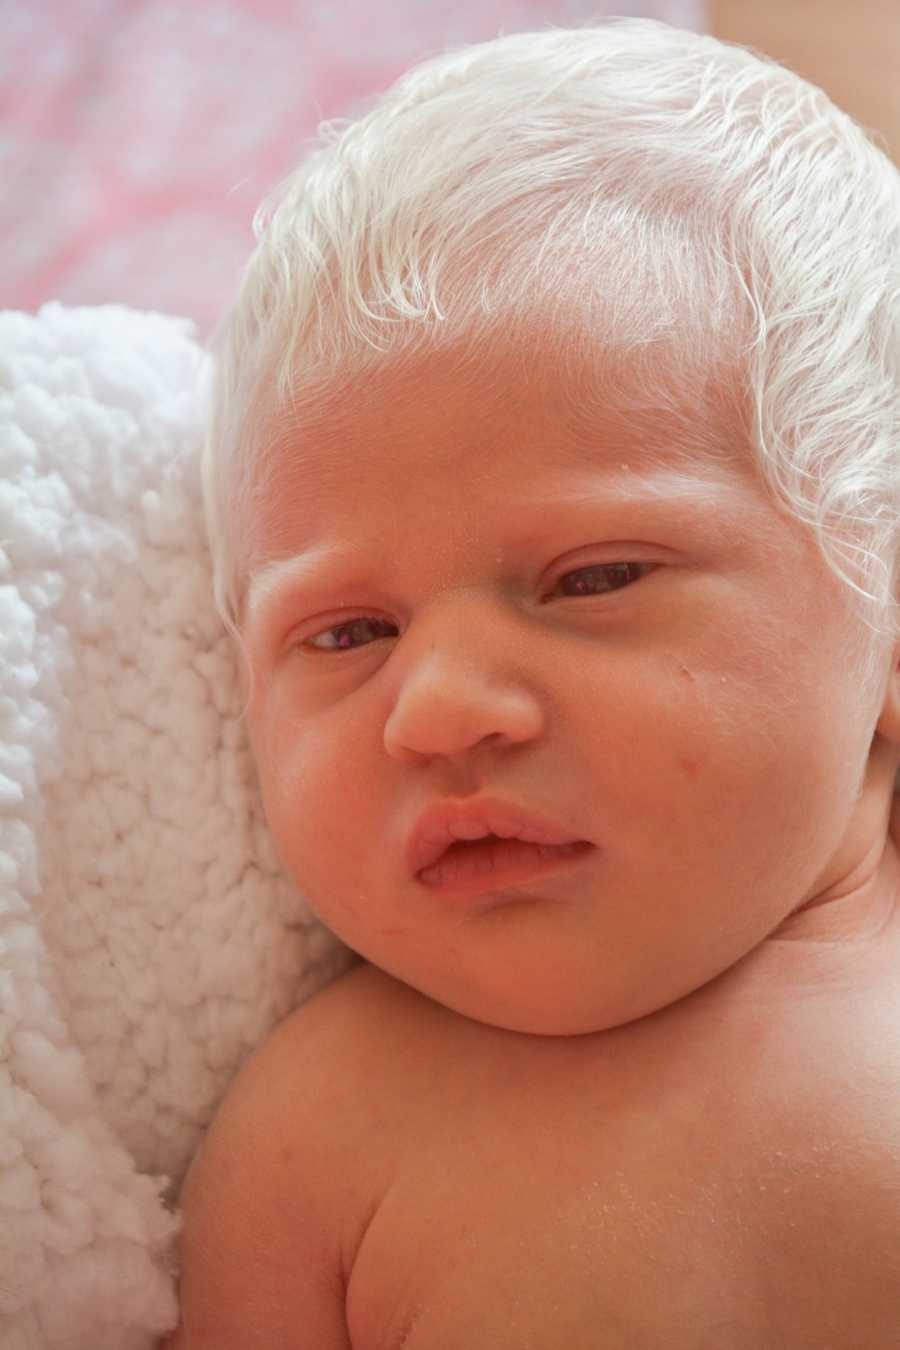 Close up of albino newborn with bright white hair